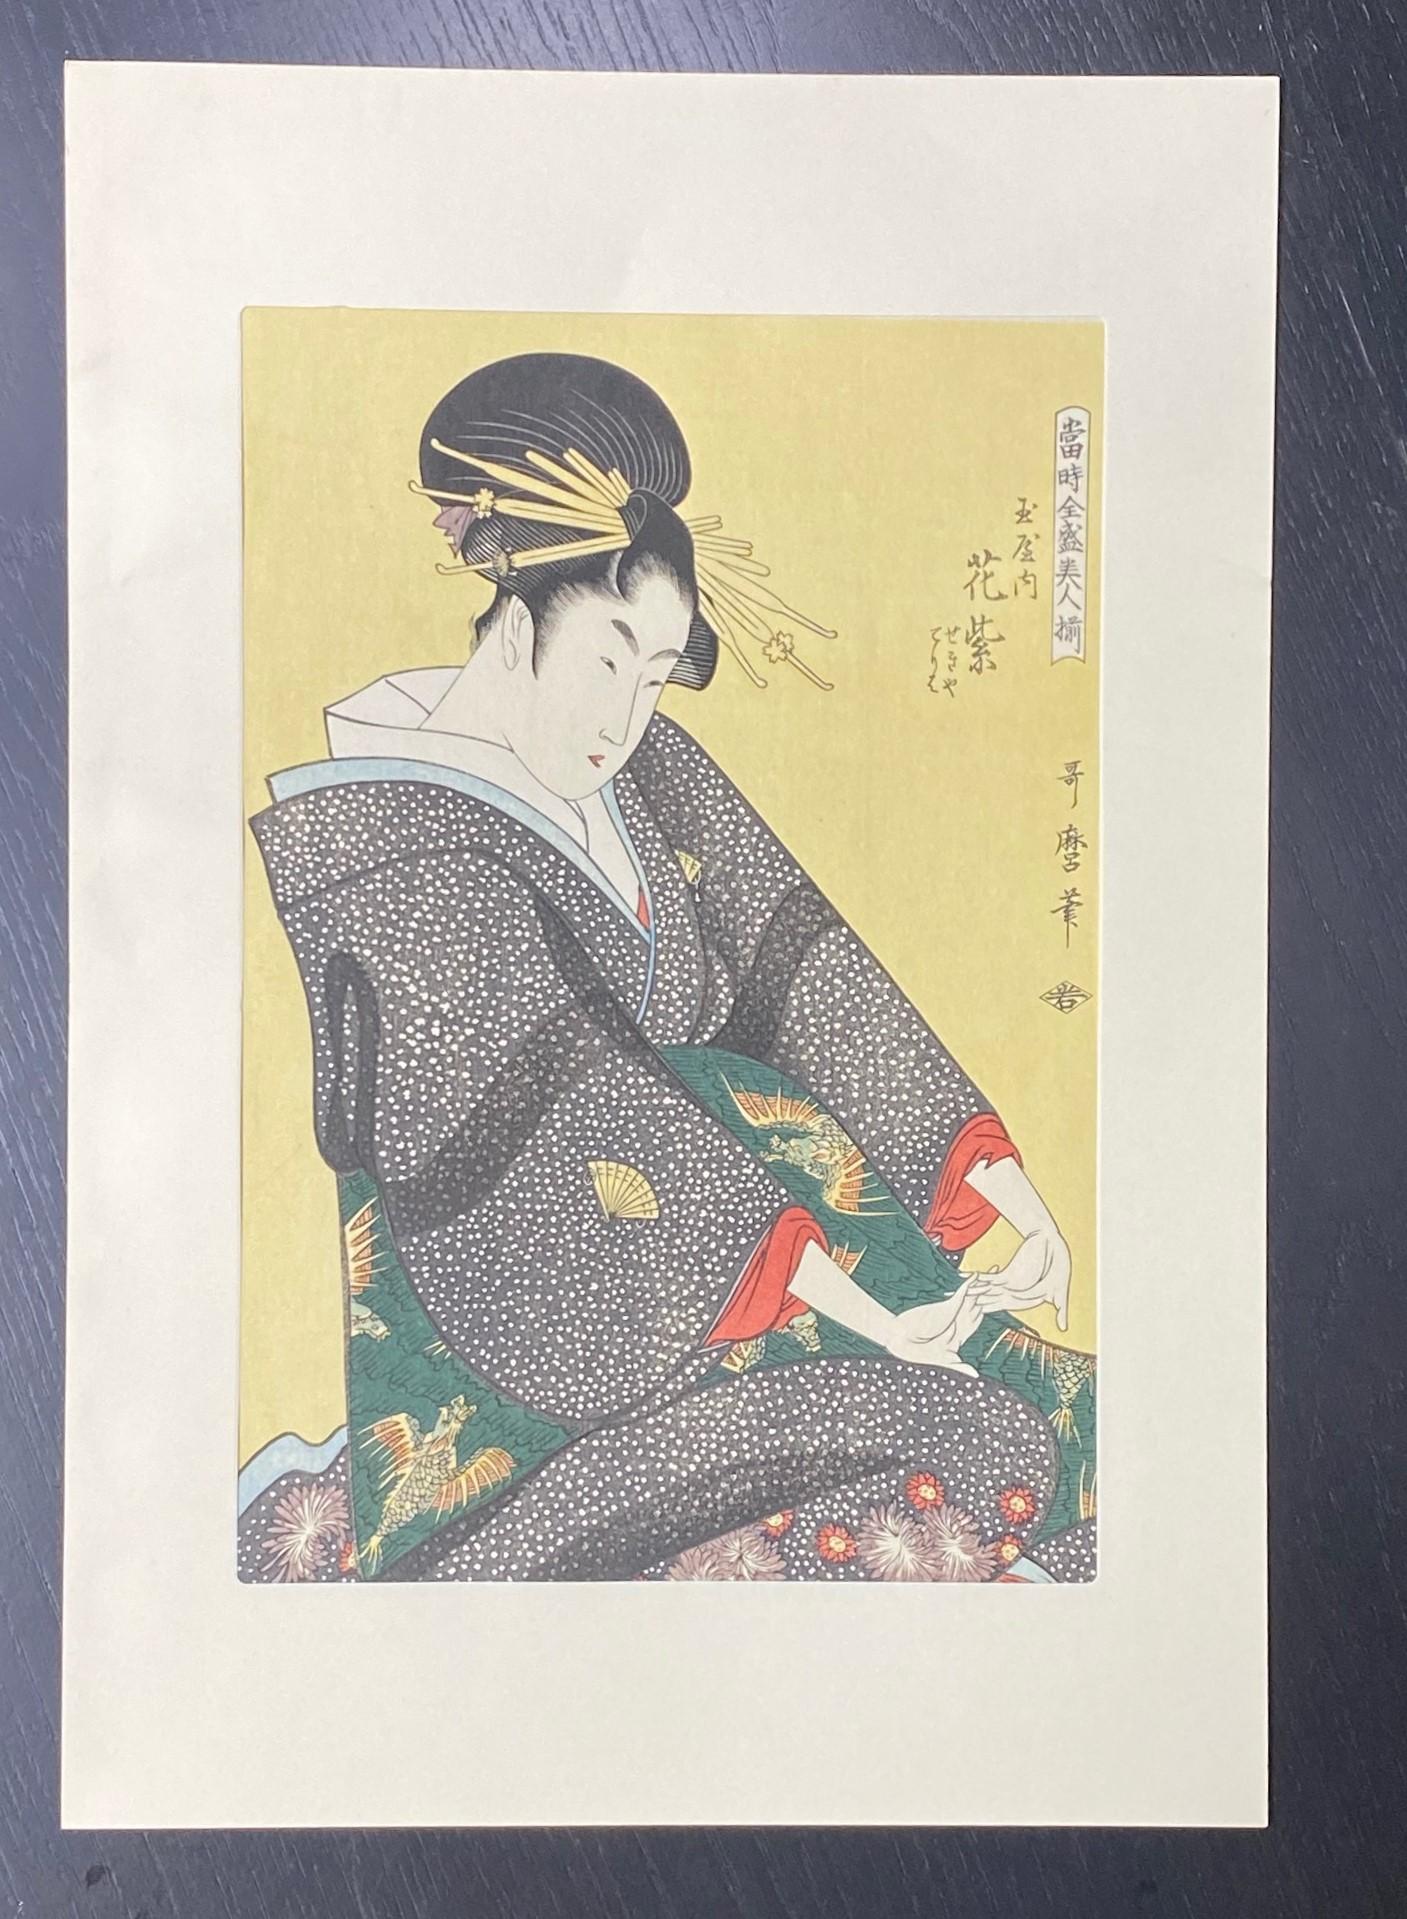 Ein wunderschön komponierter und subtil kolorierter japanischer Farbholzschnitt, der eine wunderschön geschmückte Frau im Kimono, wahrscheinlich eine Geisha, mit auffälligen gelben Haarnadeln (passend zum Hintergrund) in ihrem Haar zeigt.   

Es